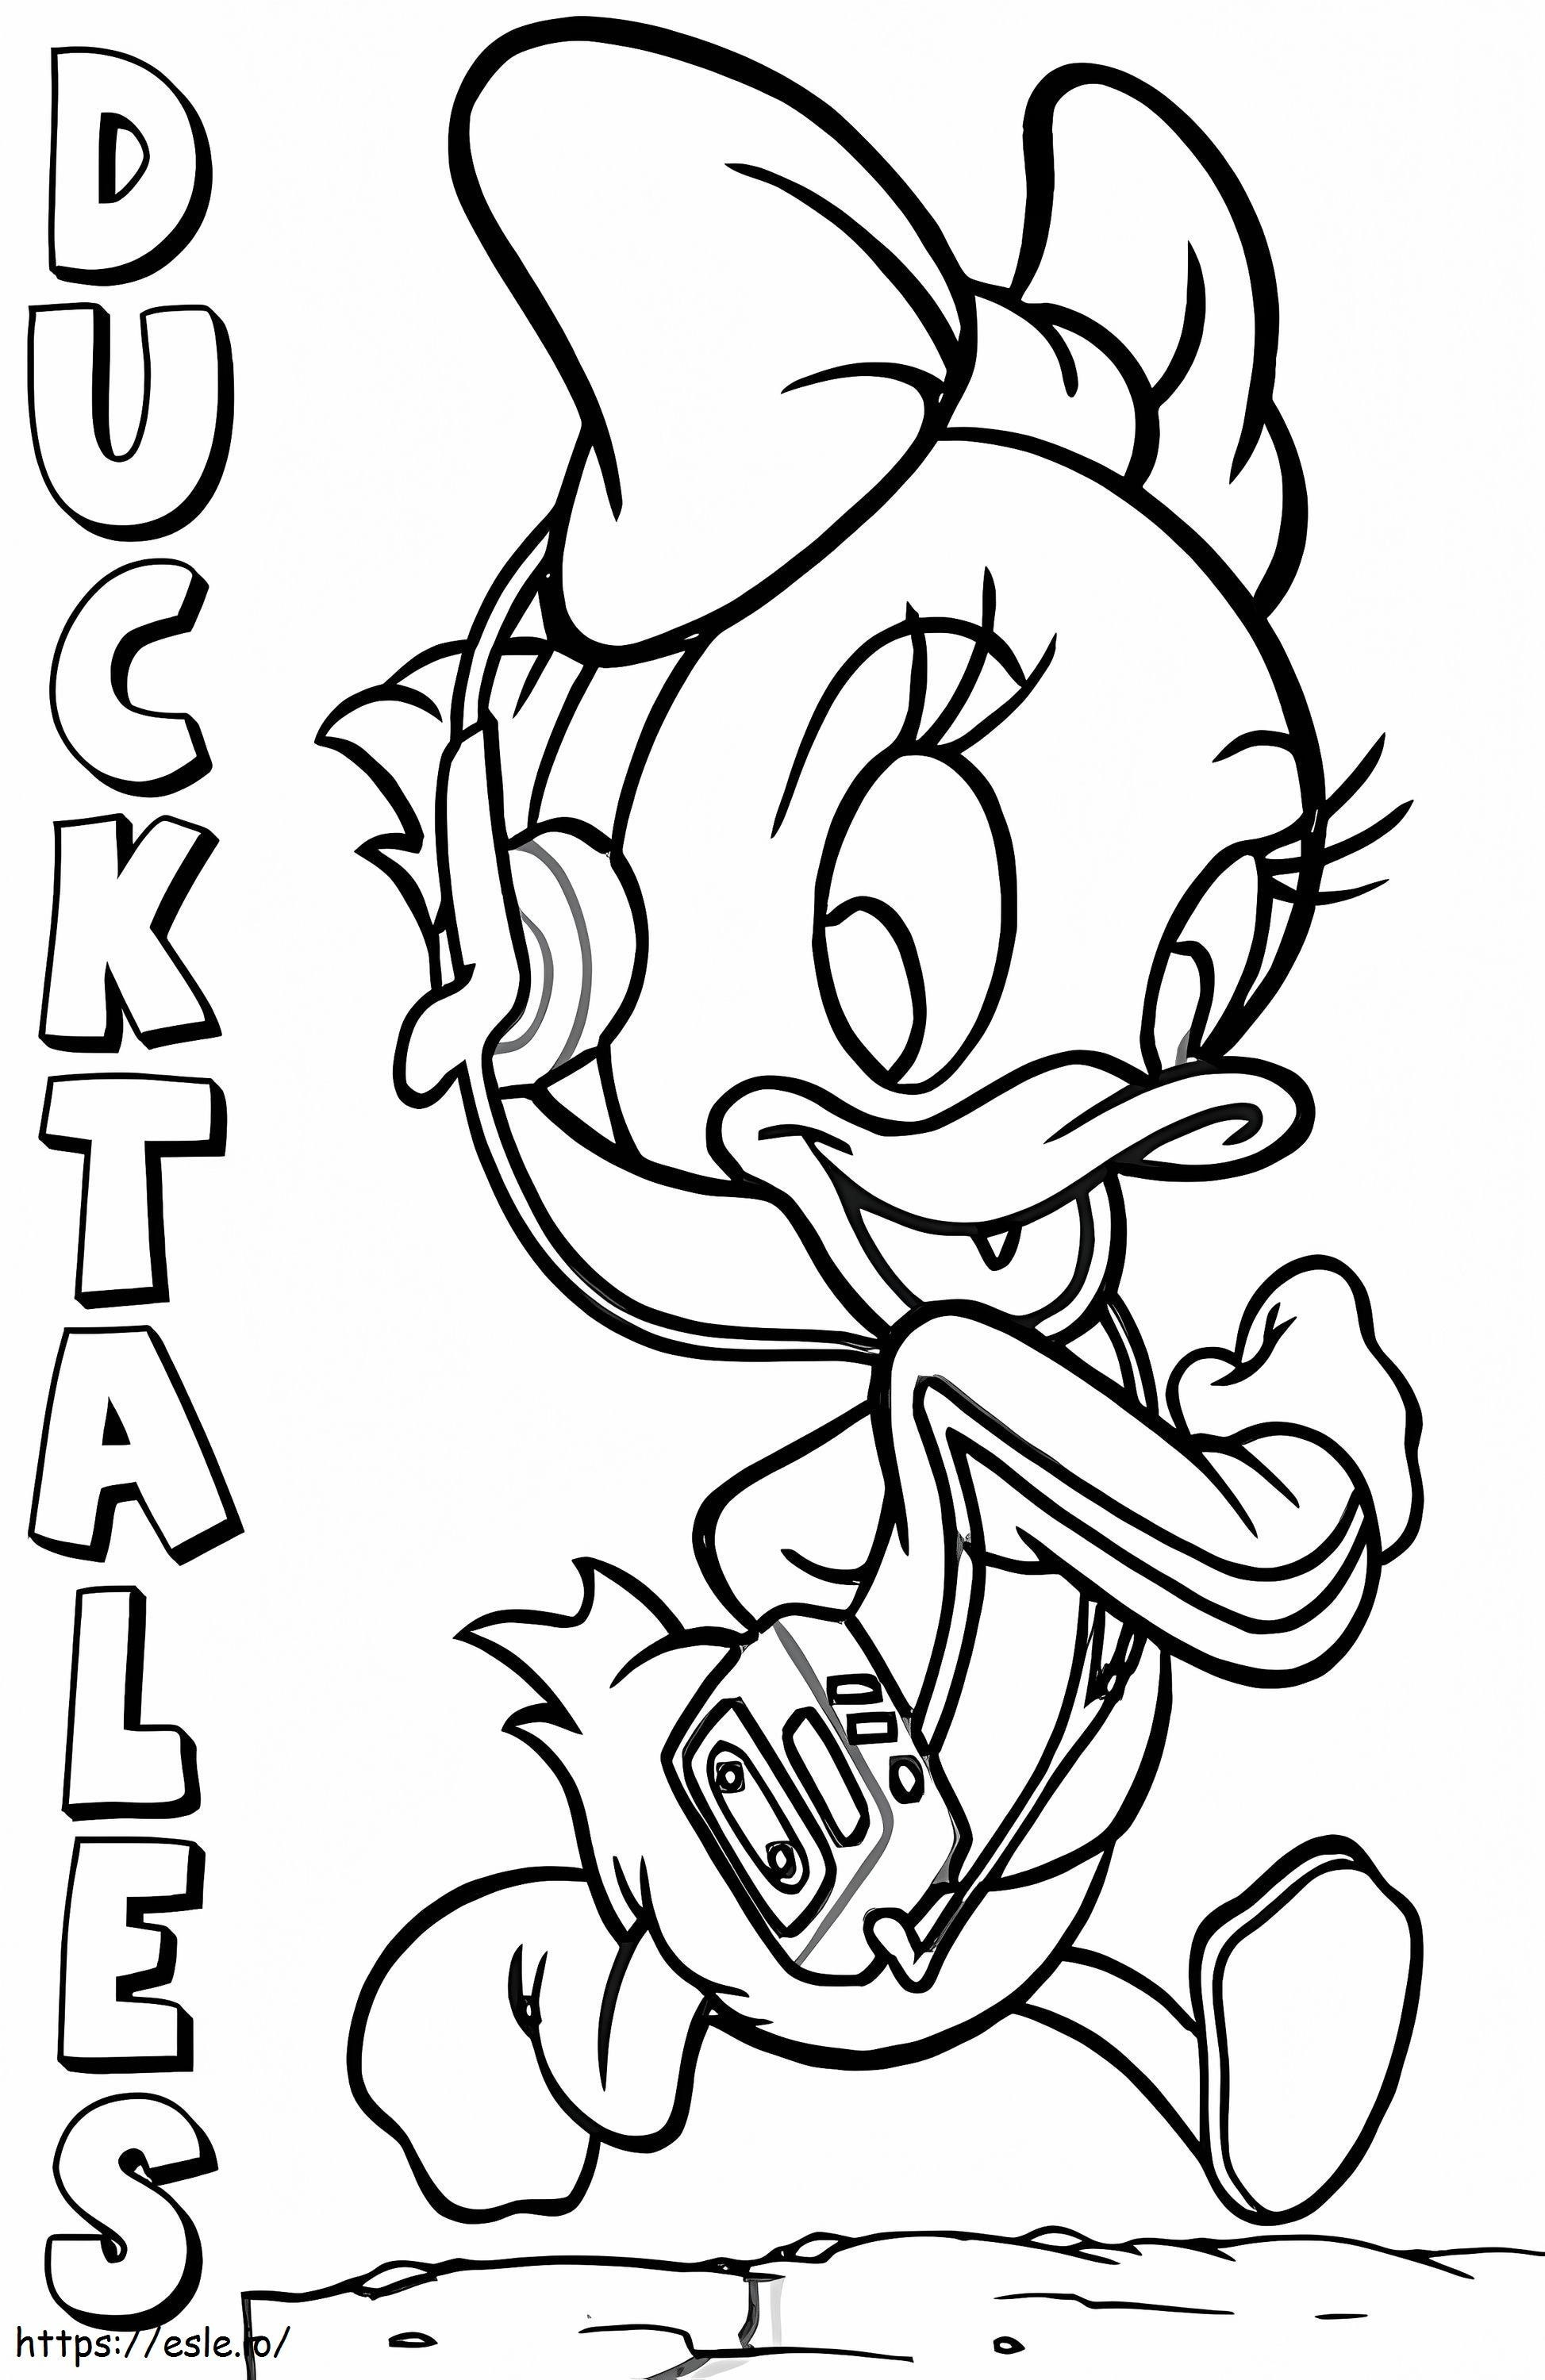 Webby Vanderquack în Ducktales de colorat